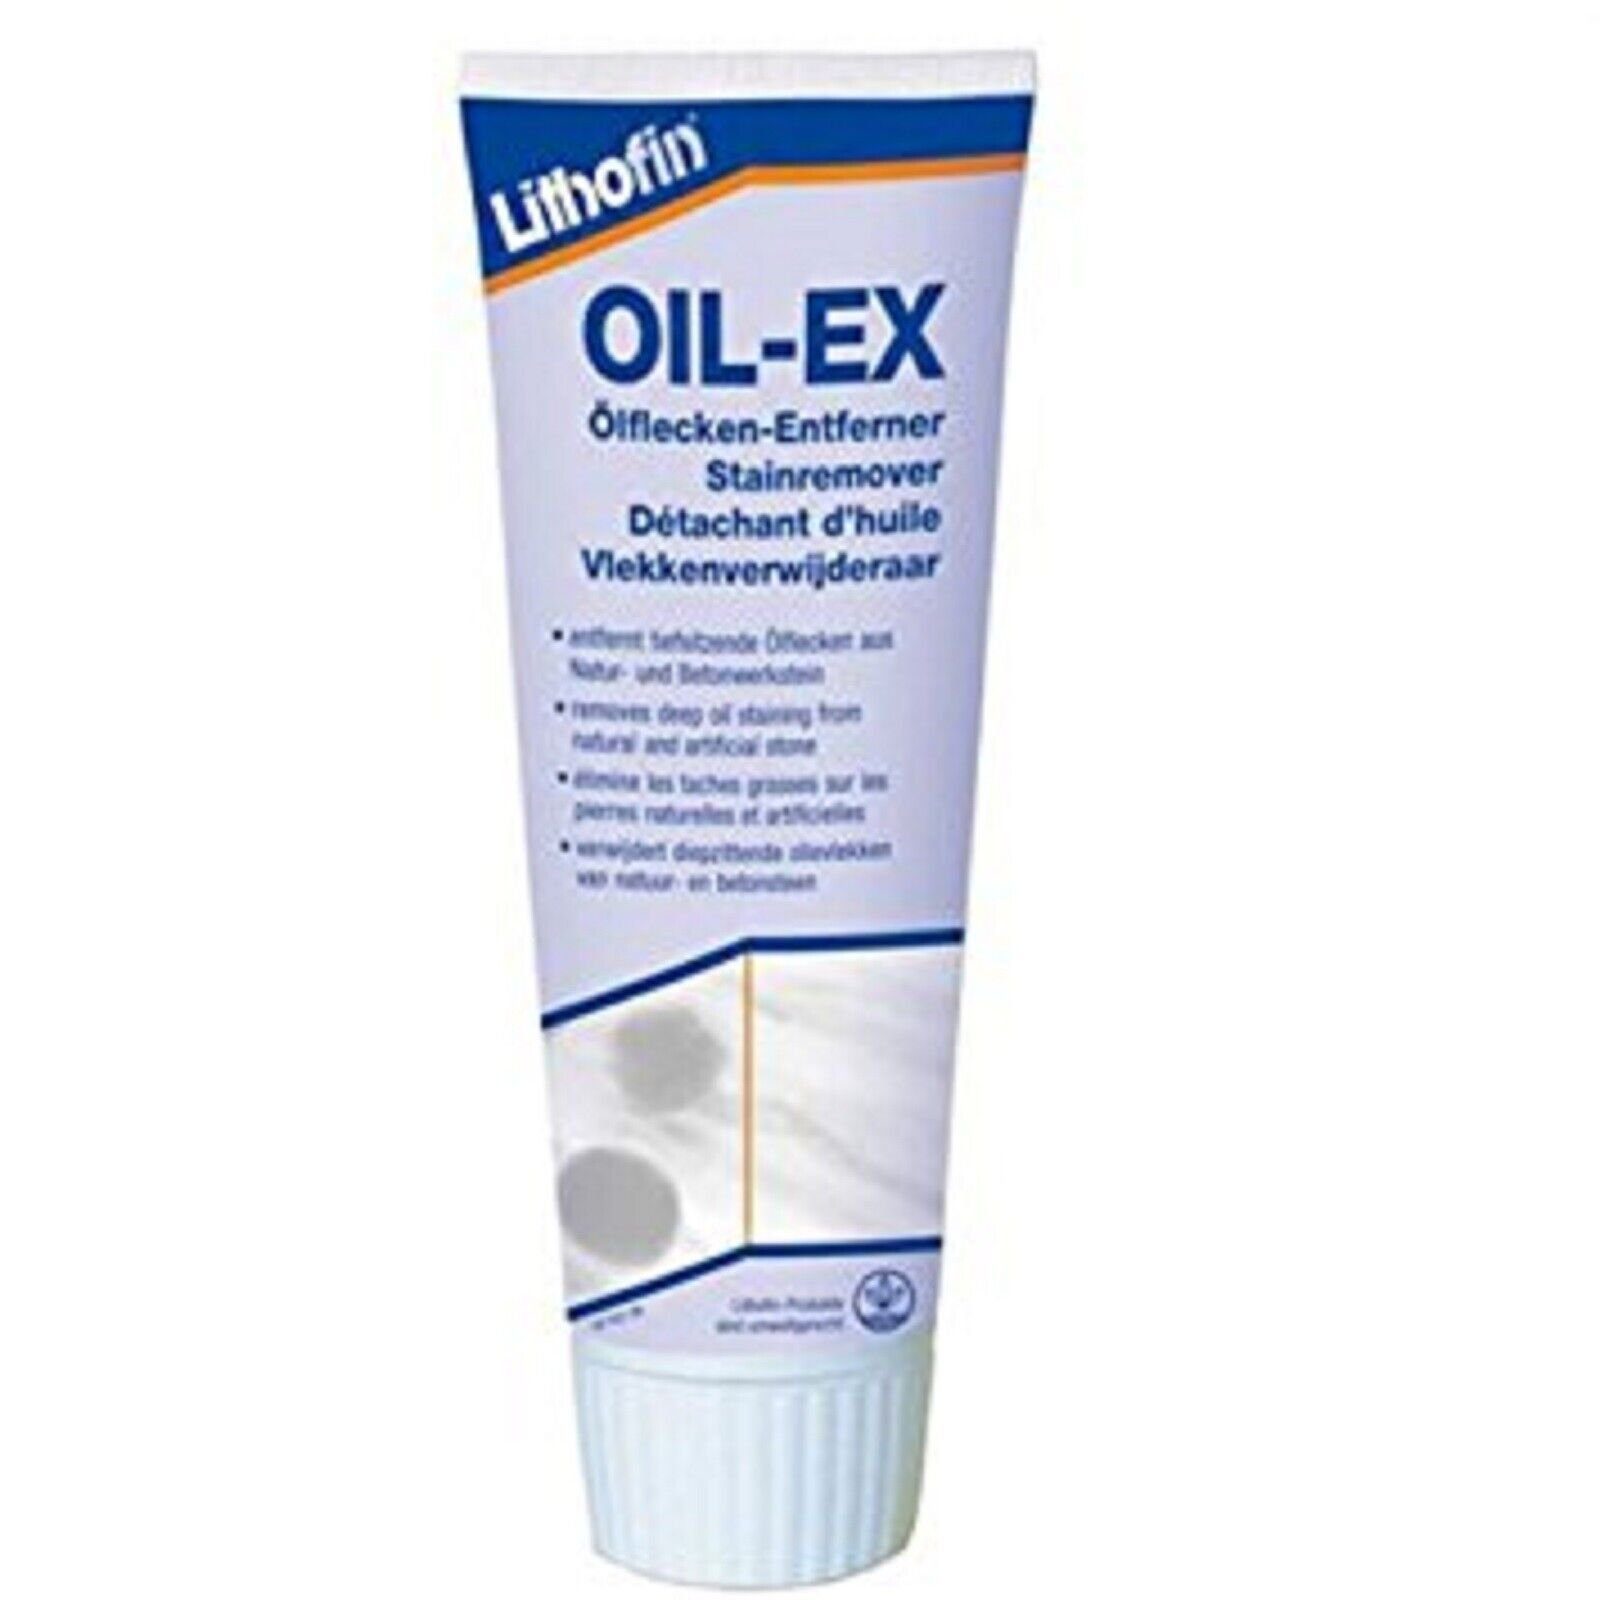 Lithofin Lithofin Oil-EX, Öllfleckentferner Fleckentferner